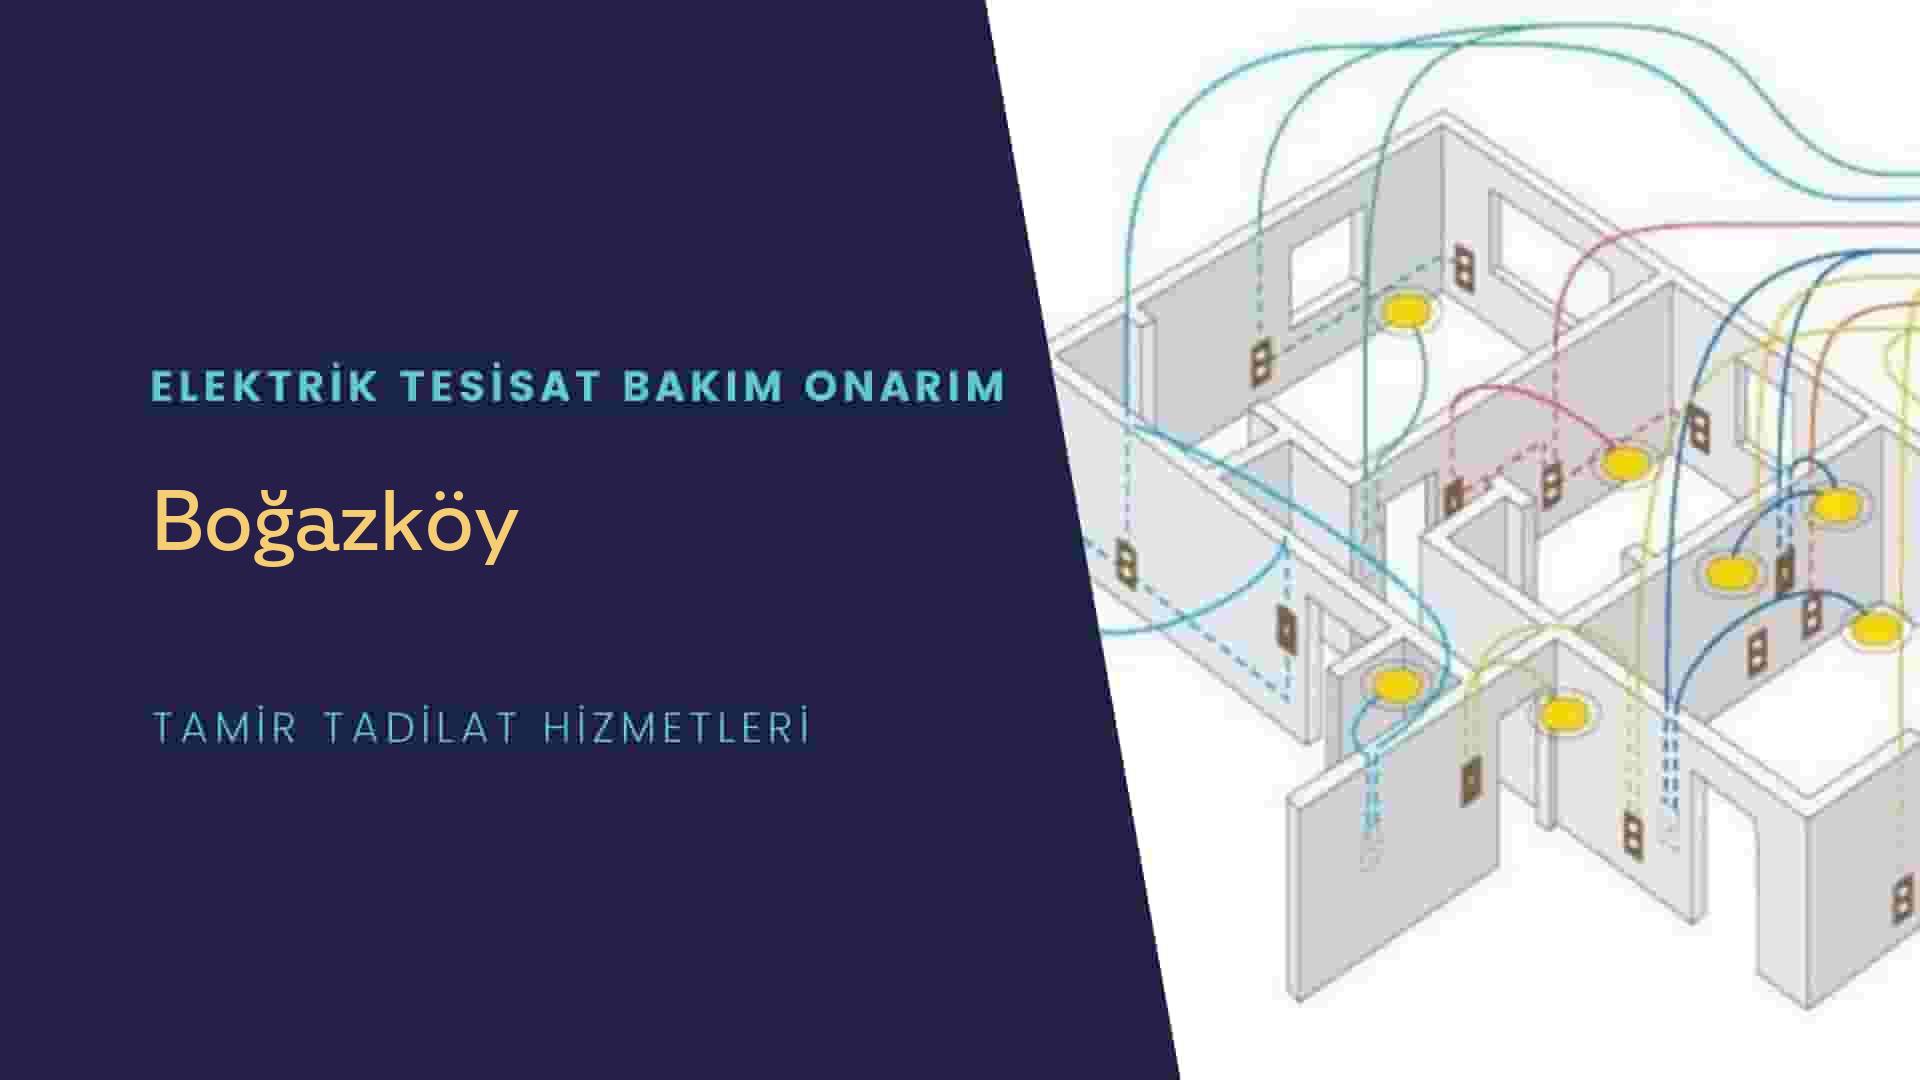 Boğazköy'de elektrik tesisatı ustalarımı arıyorsunuz doğru adrestenizi Boğazköy elektrik tesisatı ustalarımız 7/24 sizlere hizmet vermekten mutluluk duyar.